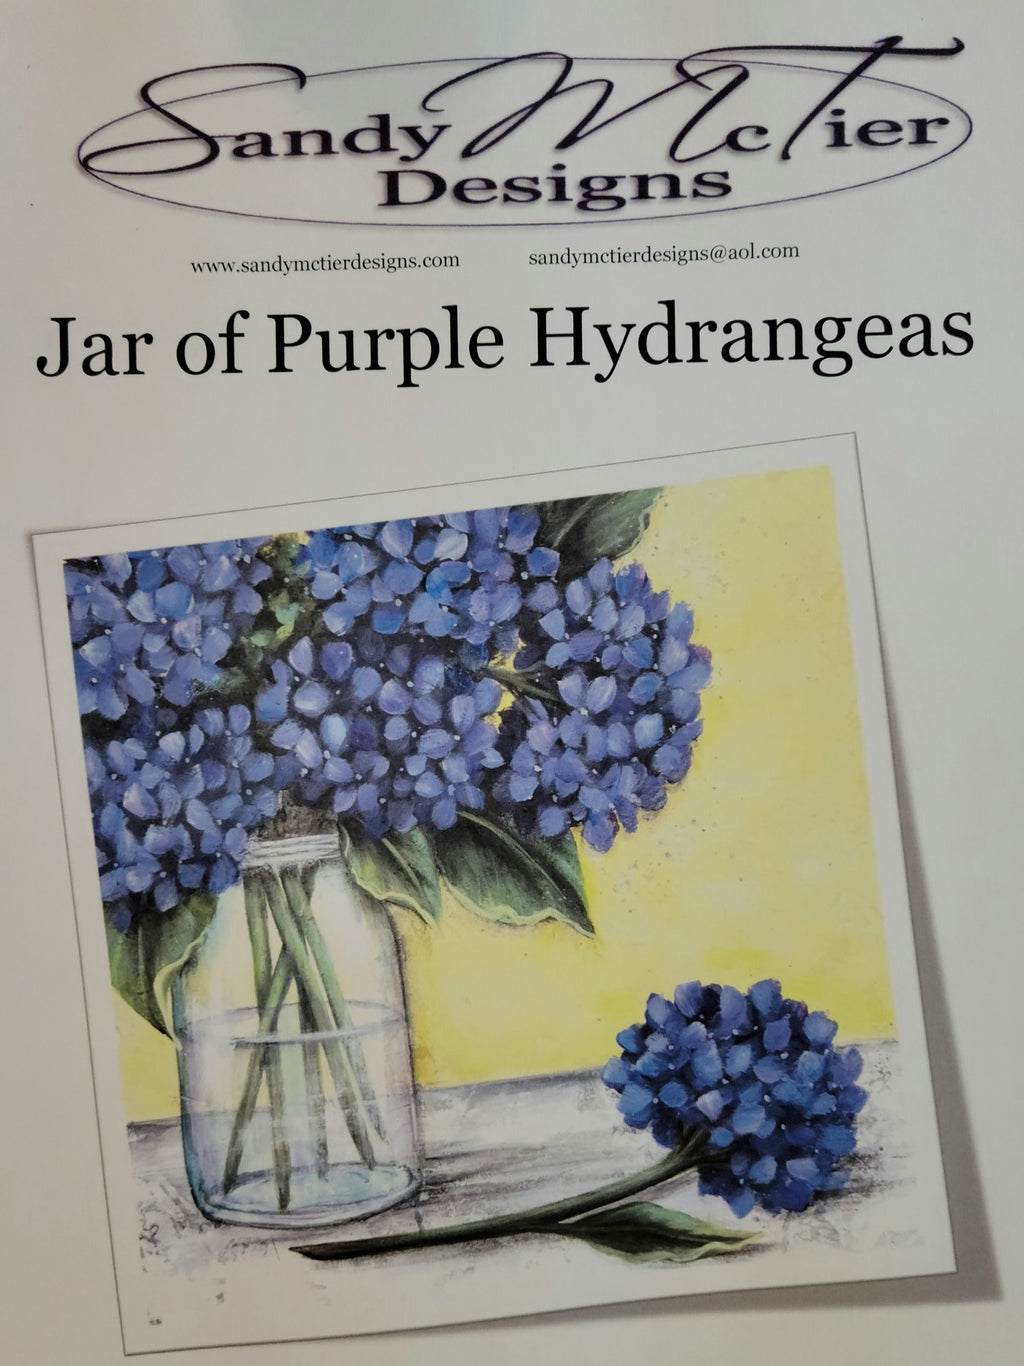 Jar of Purple Hydrangeas packey by Sandy McTier